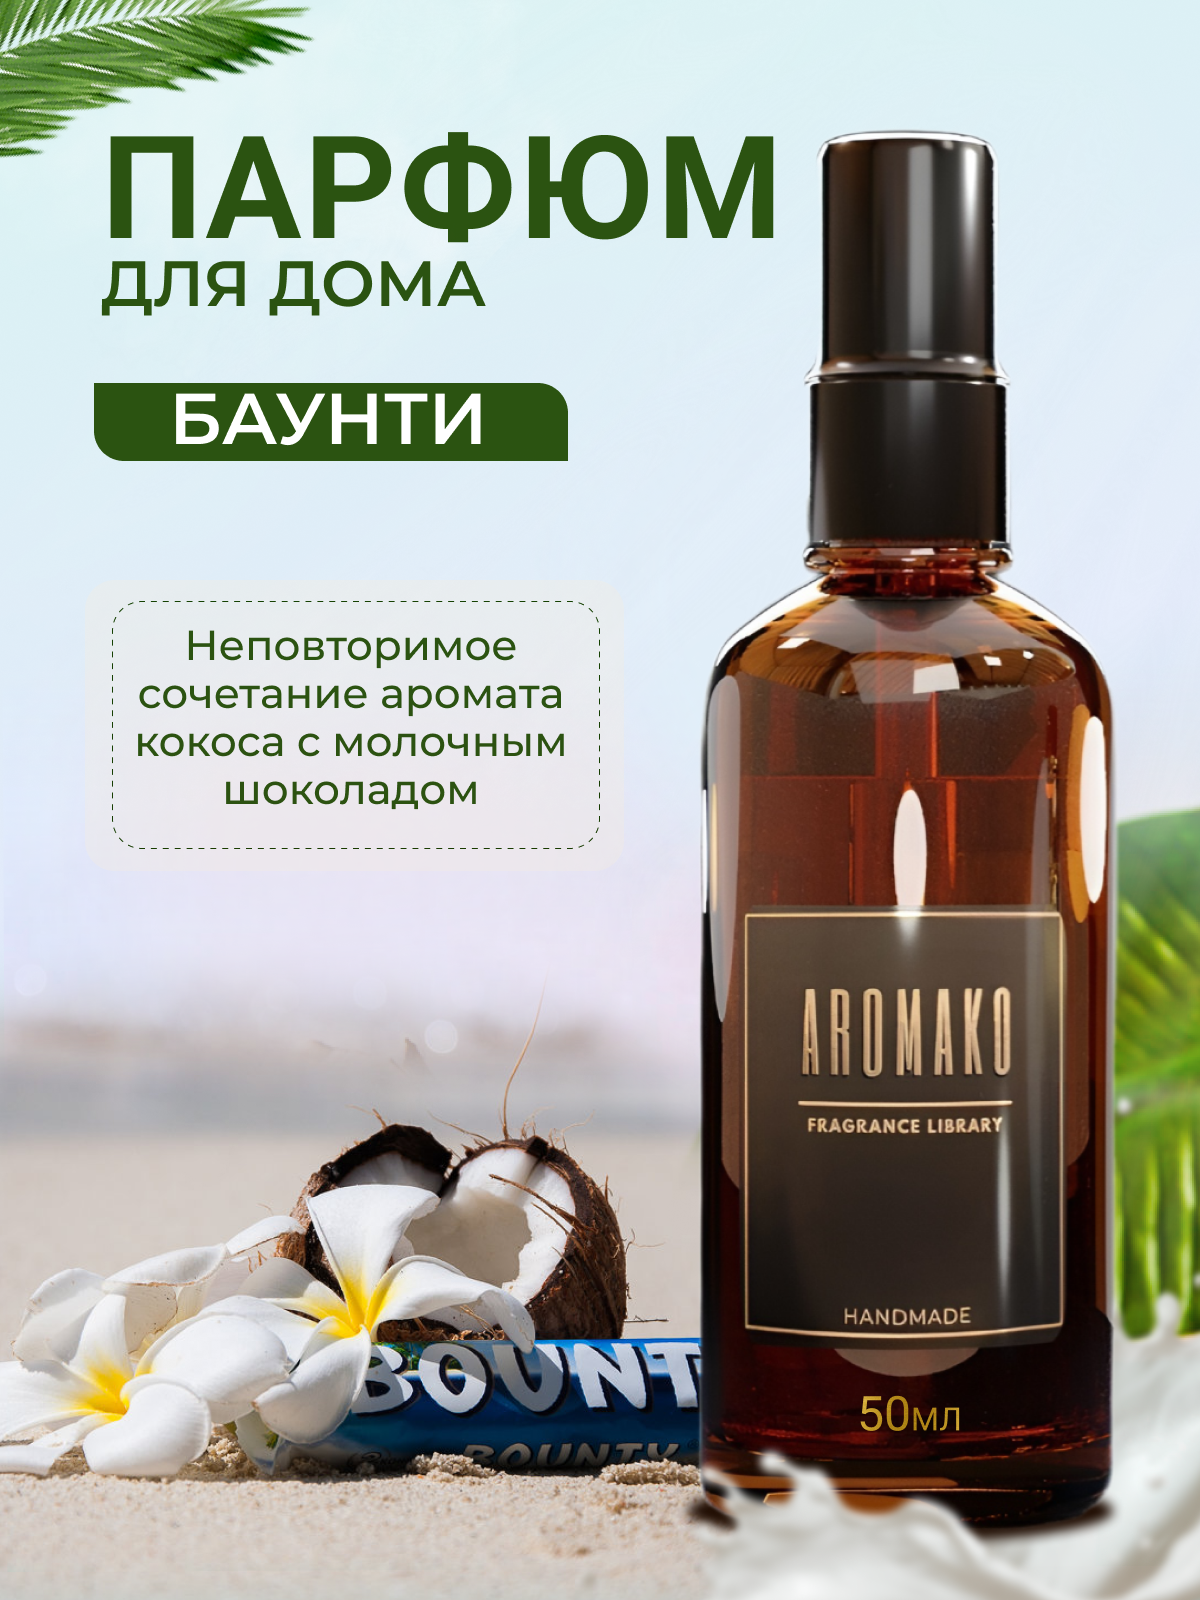 Парфюм-спрей для дома Баунти 50 мл AROMAKO , текстильный парфюм, освежитель воздуха, ароматизатор для дома